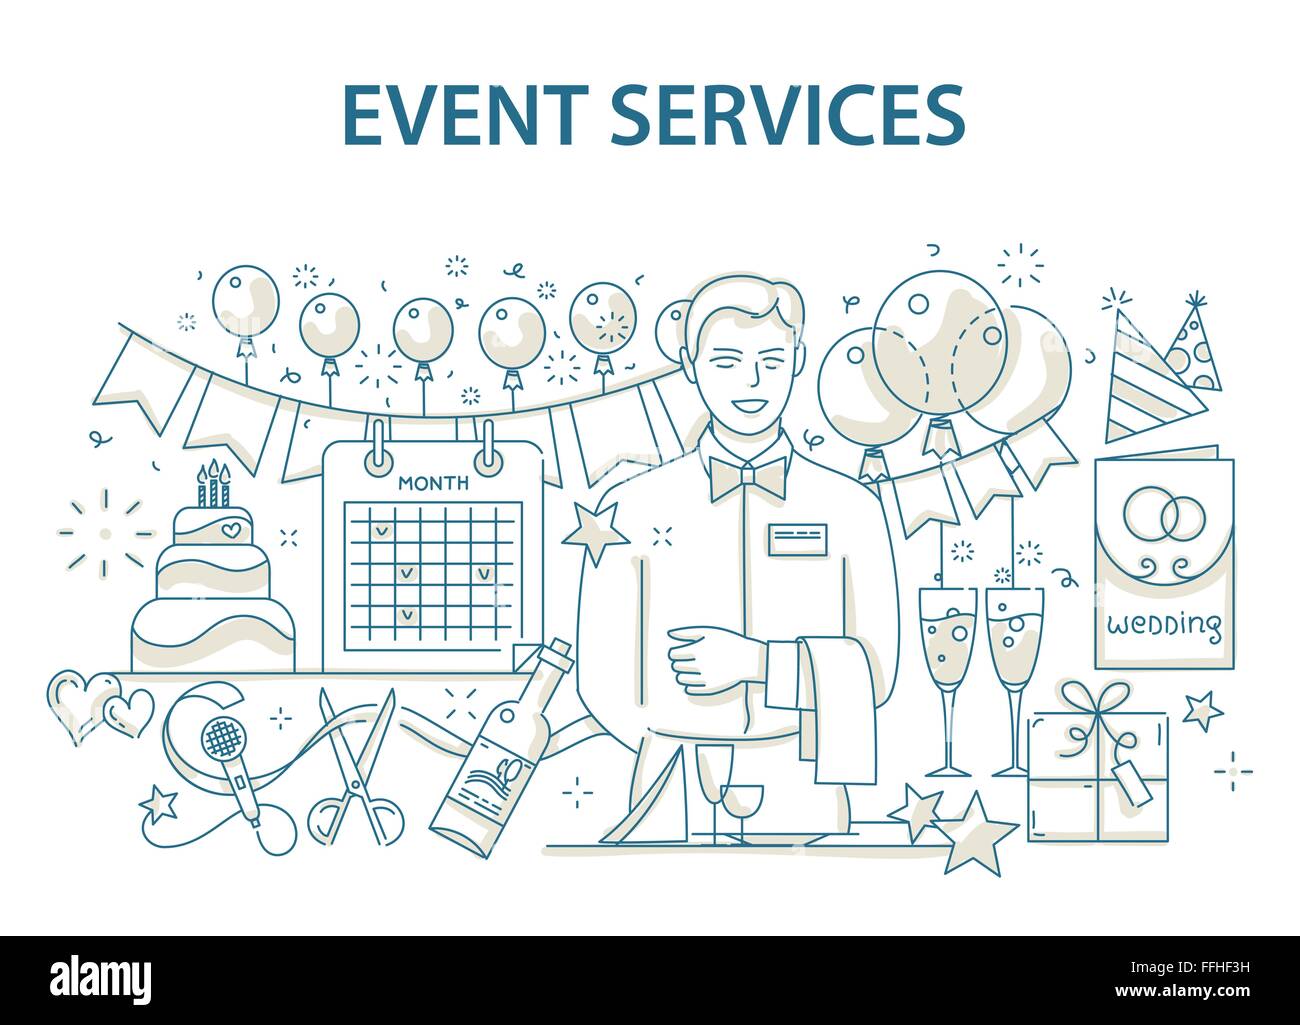 Doodle-Stil-Design-Konzept der Veranstaltung und alles Gute zum Geburtstag-Partei-Organisation, catering-Service-Agentur Stock Vektor